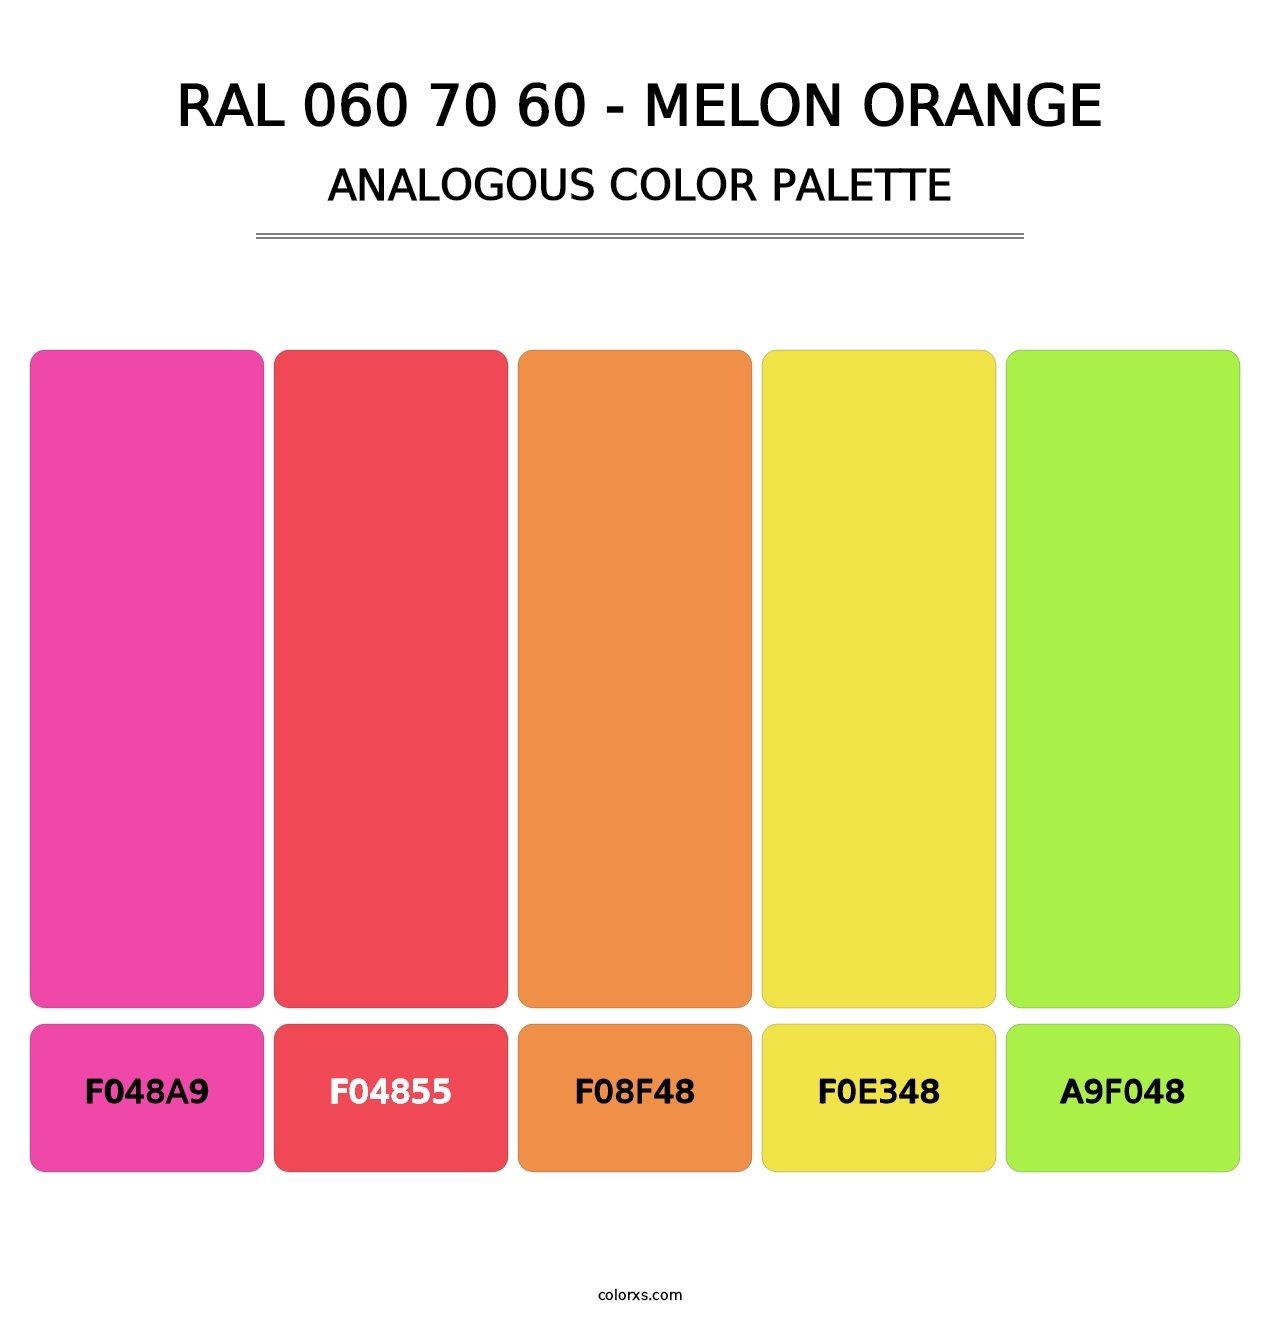 RAL 060 70 60 - Melon Orange - Analogous Color Palette